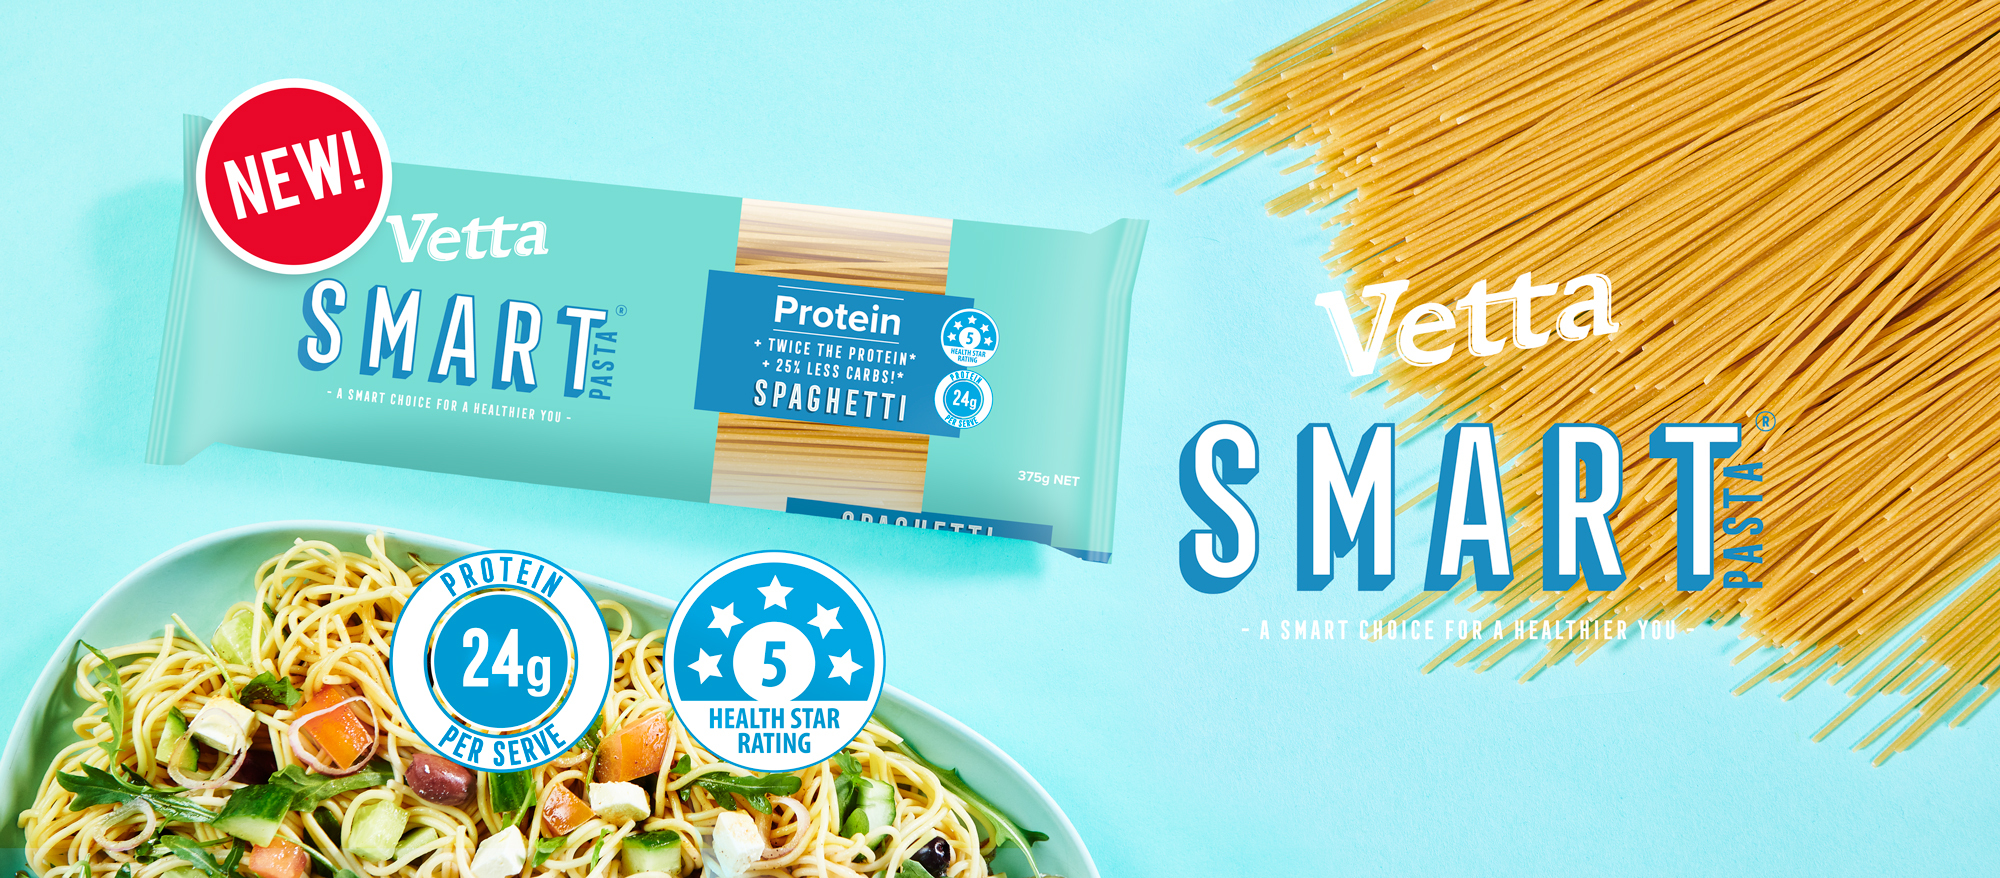 NEW Vetta SMART Protein Spaghetti